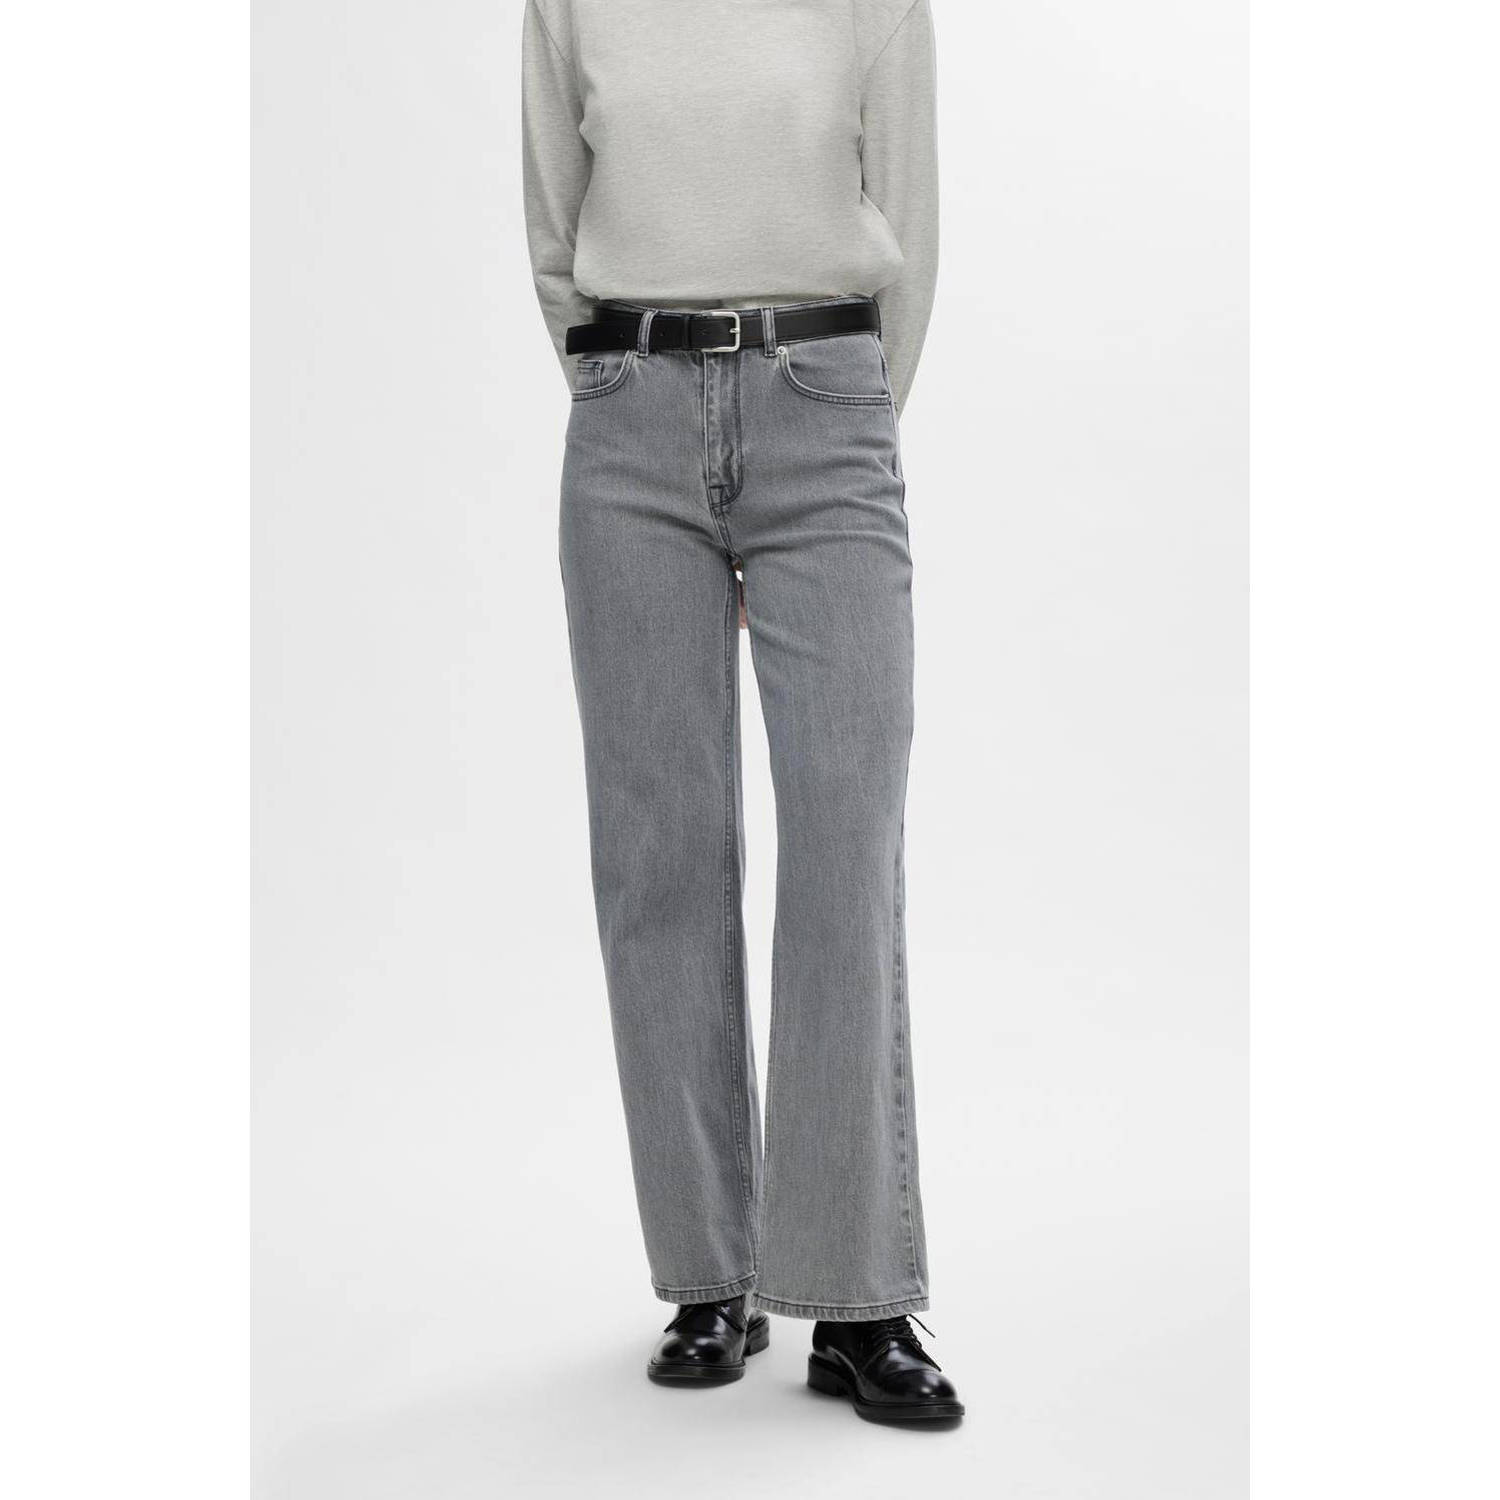 SELECTED FEMME high waist straight jeans SLFALICE grey denim